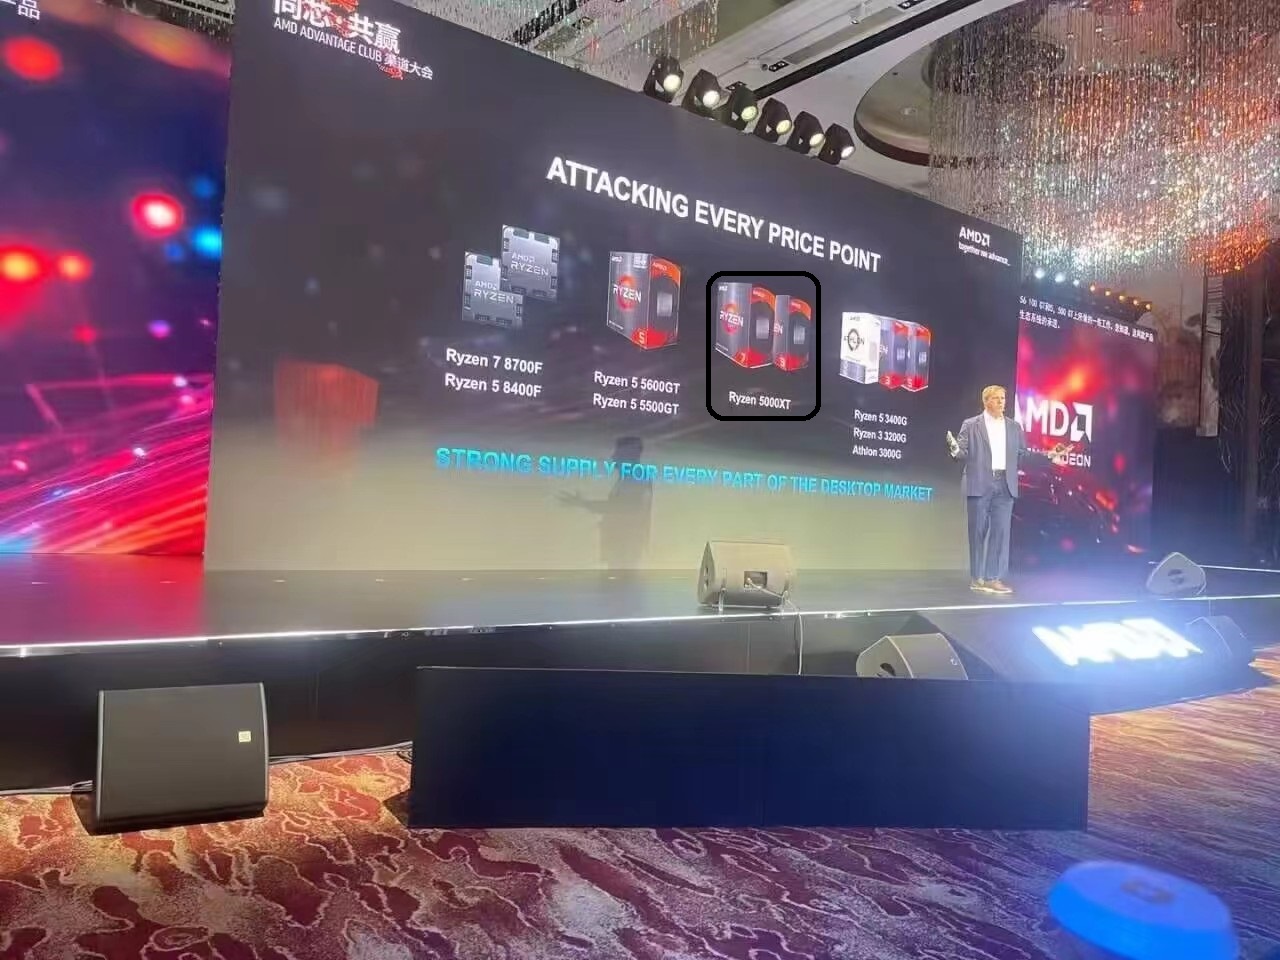 消息称 AMD 将推锐龙 5000XT 系列处理器，继续为 AM4 平台更新产品